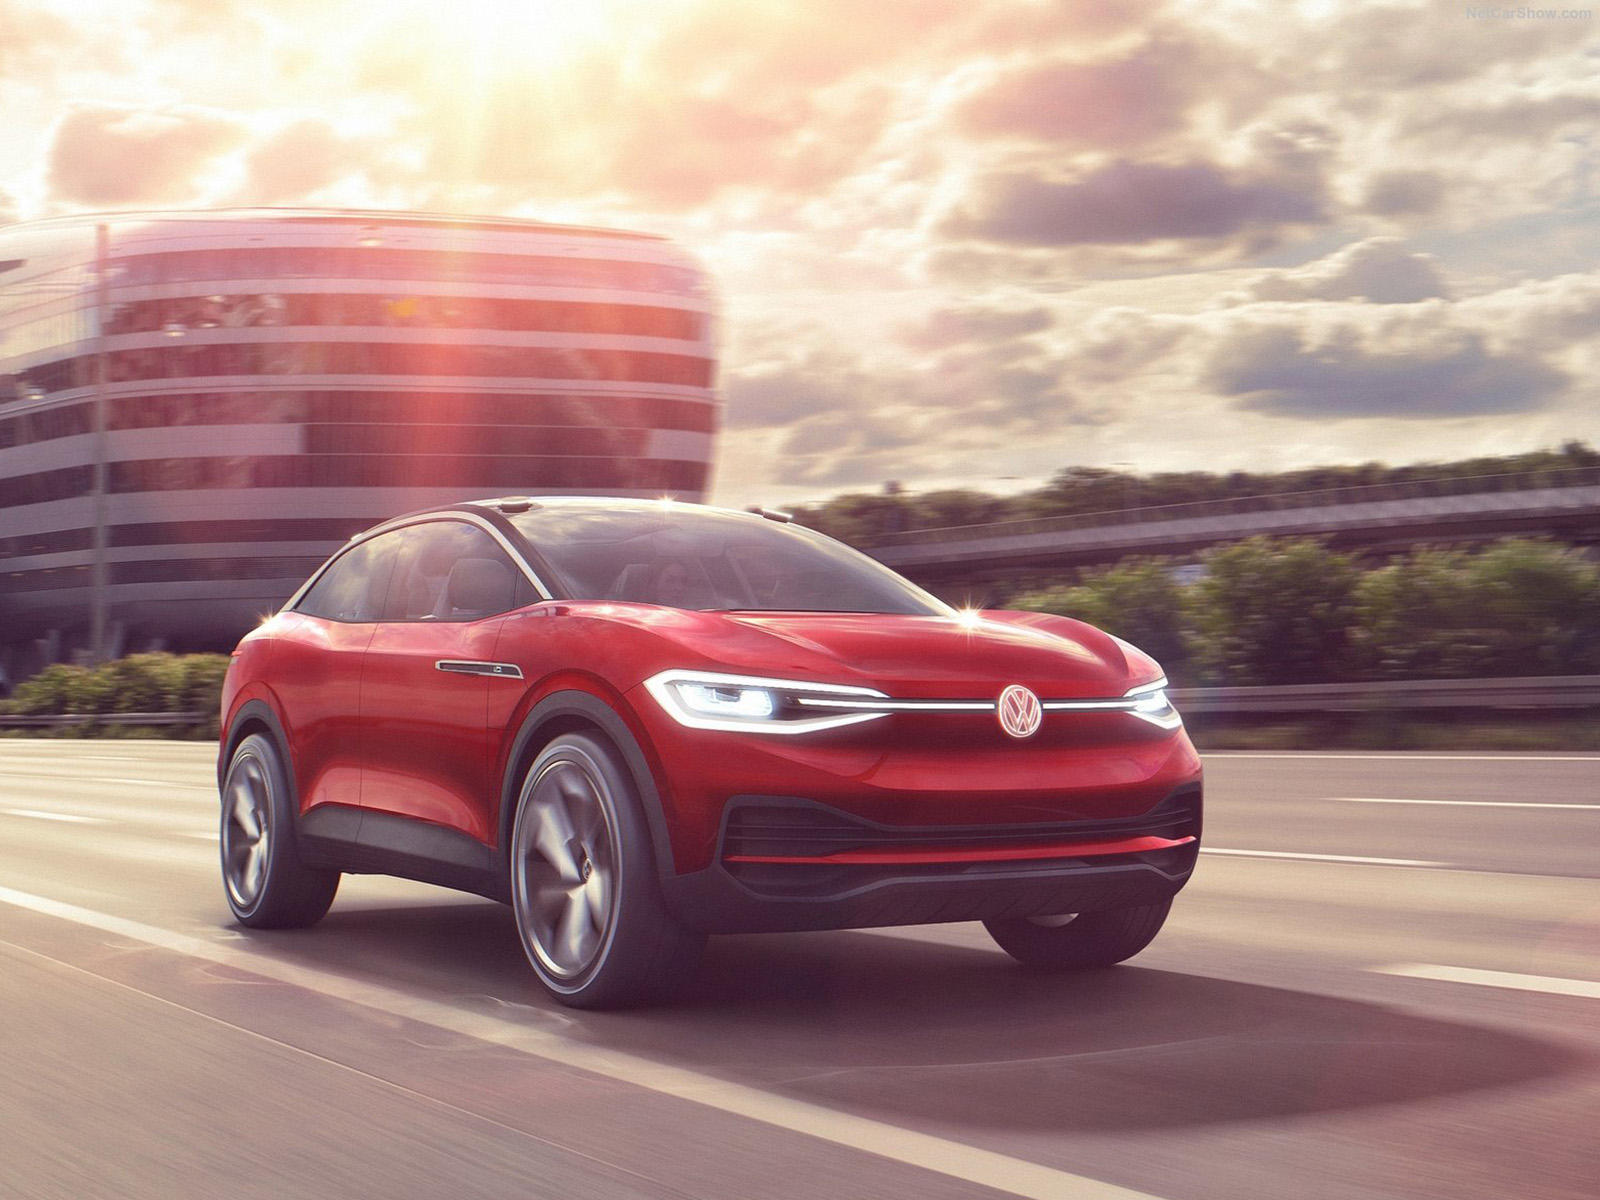 Революция EV в Volkswagen случится совсем скоро. В то время как производство в США первоначально предполагалось на существующем заводе в Чаттануга в Теннесси, теперь автопроизводитель подтвердил, что построит новый завод в Северной Америке, целиком п